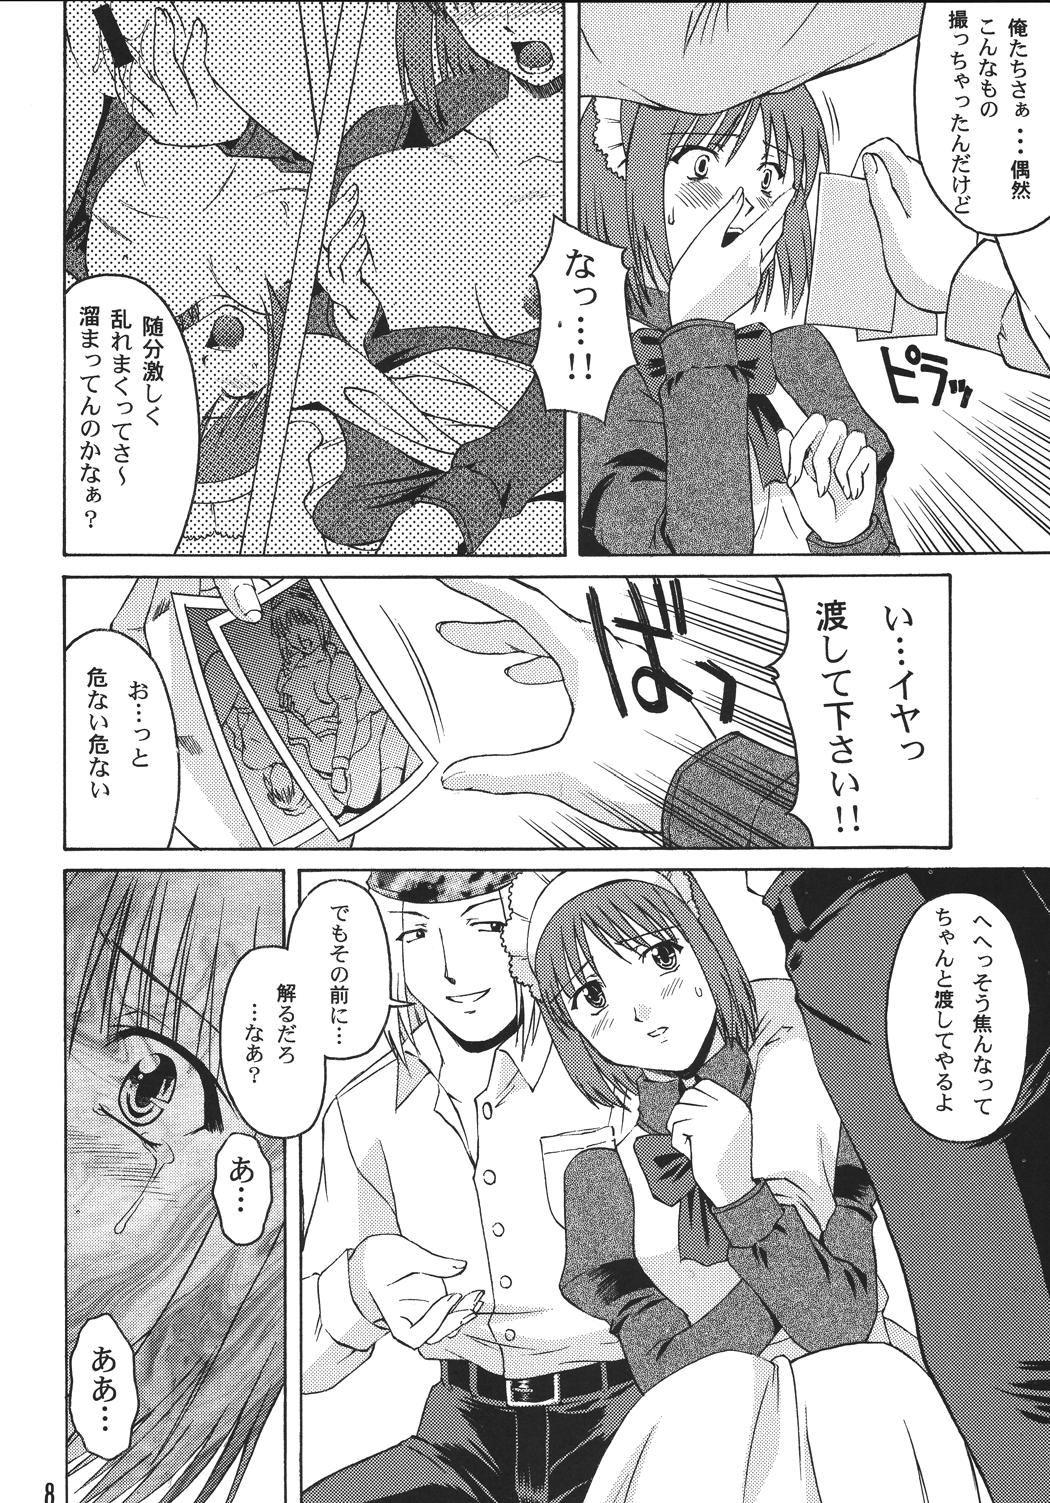 Story Momijiiro no Tsuki - Tsukihime Flagra - Page 8